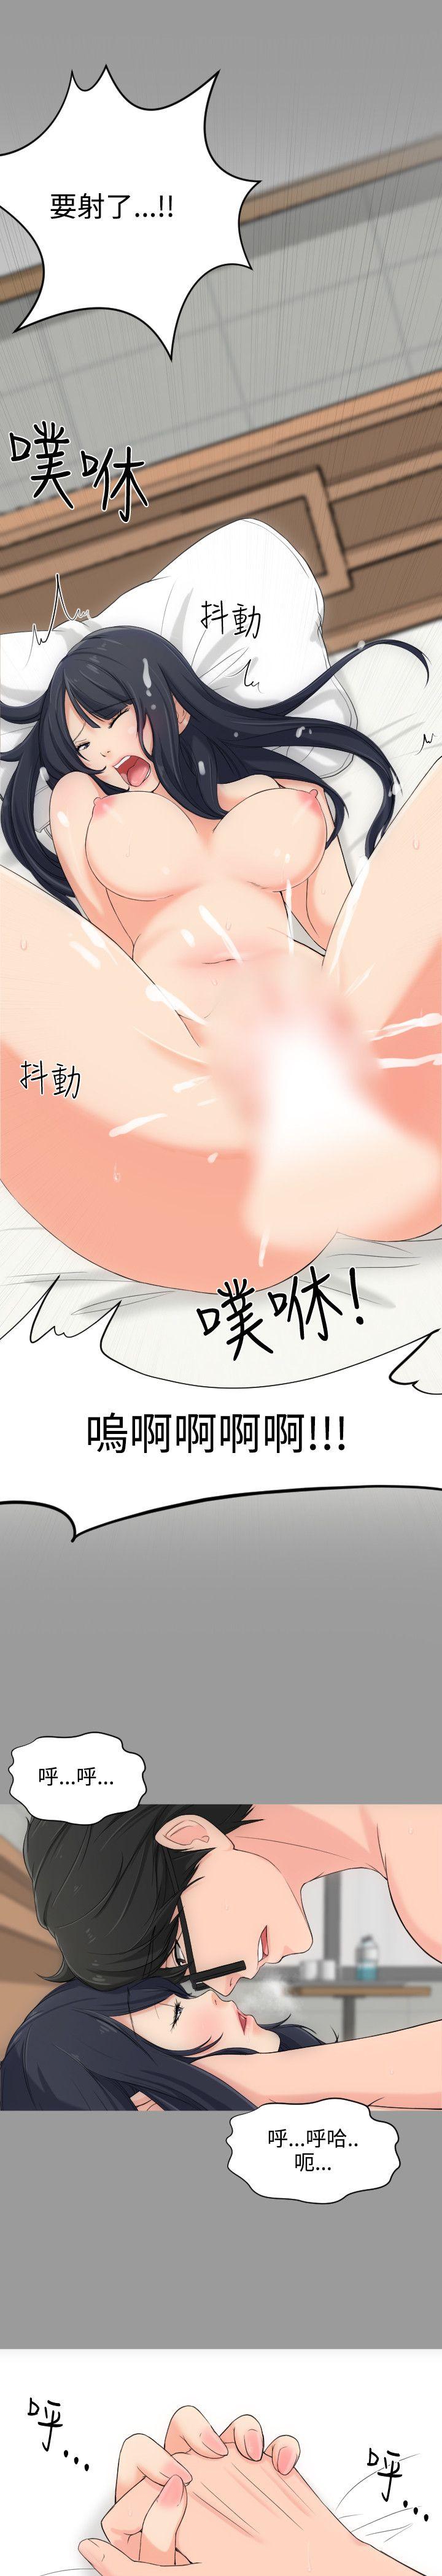 韩国污漫画 成人的滋味 第4话 15